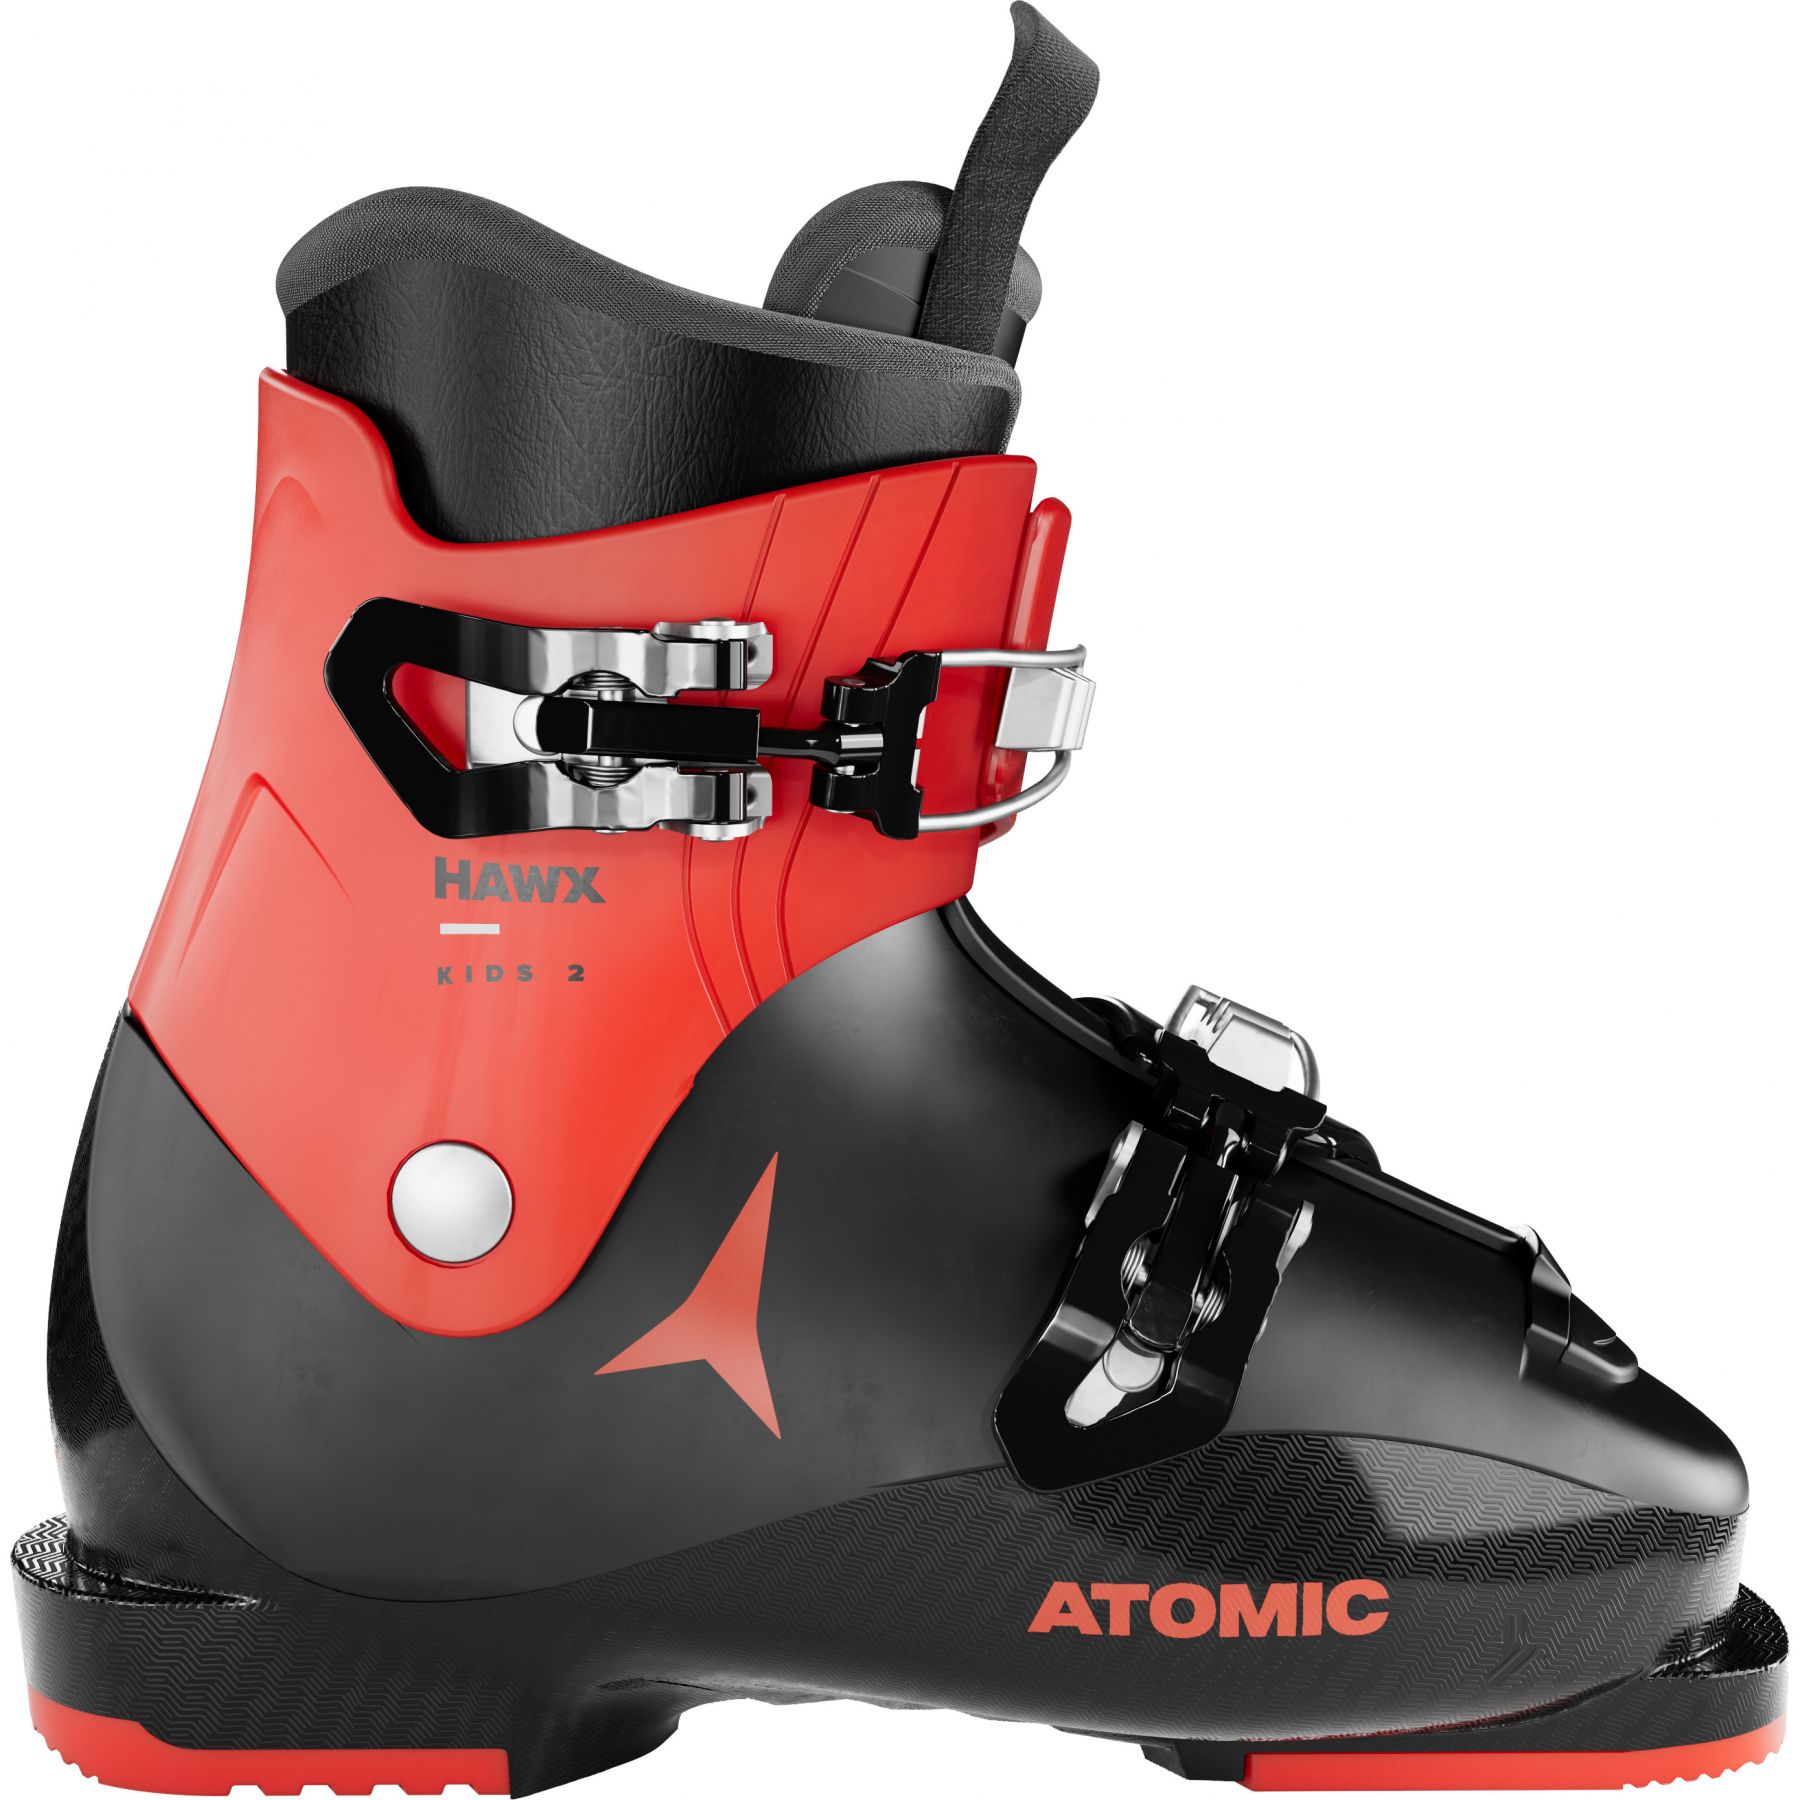 Billede af Atomic Hawx Kids 2, skistøvler, junior, sort/rød